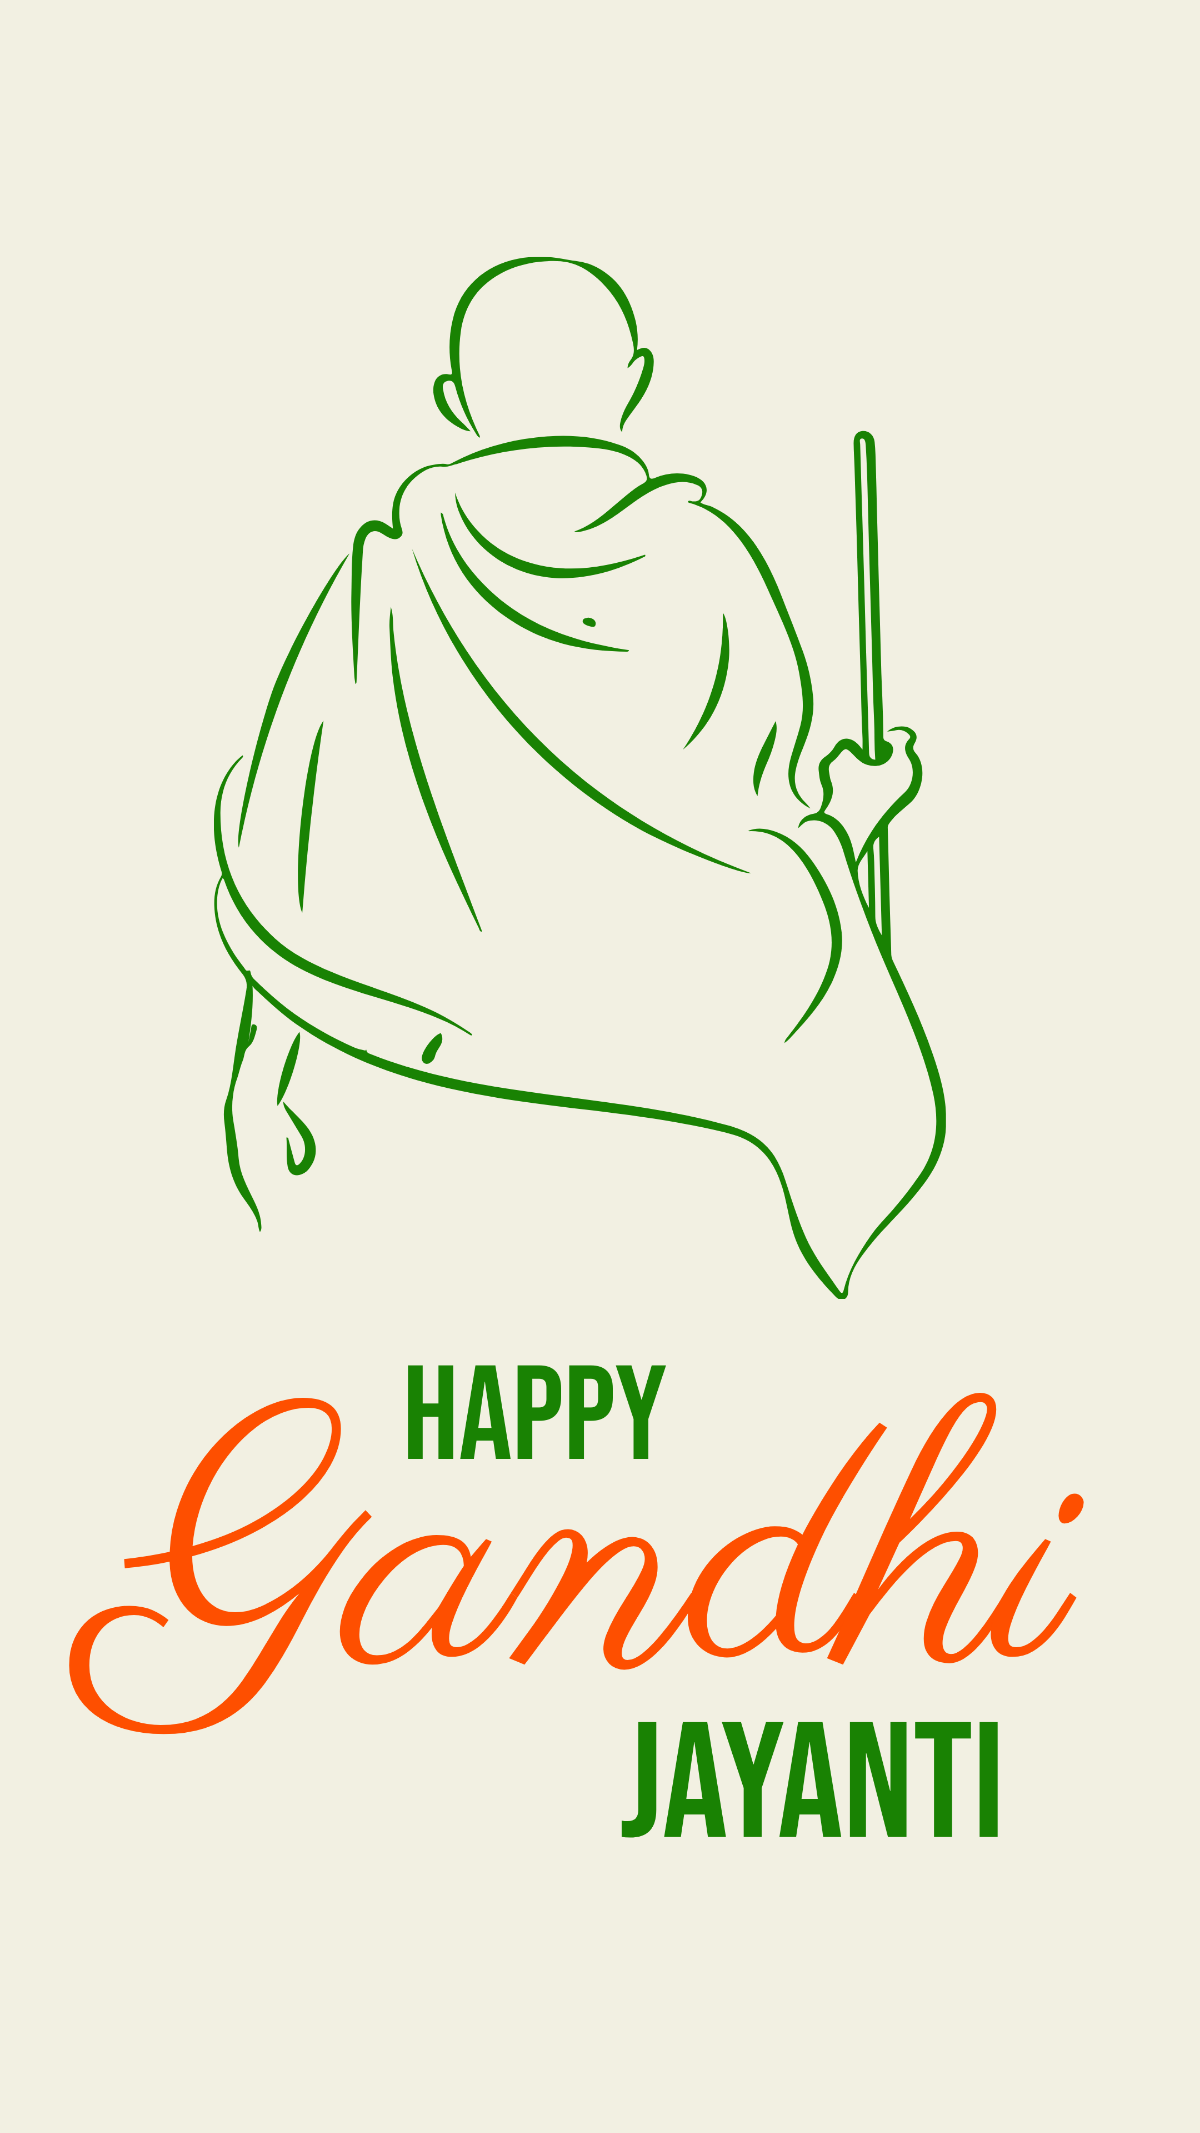 Gandhi jayanti poster drawing /easy poster - YouTube